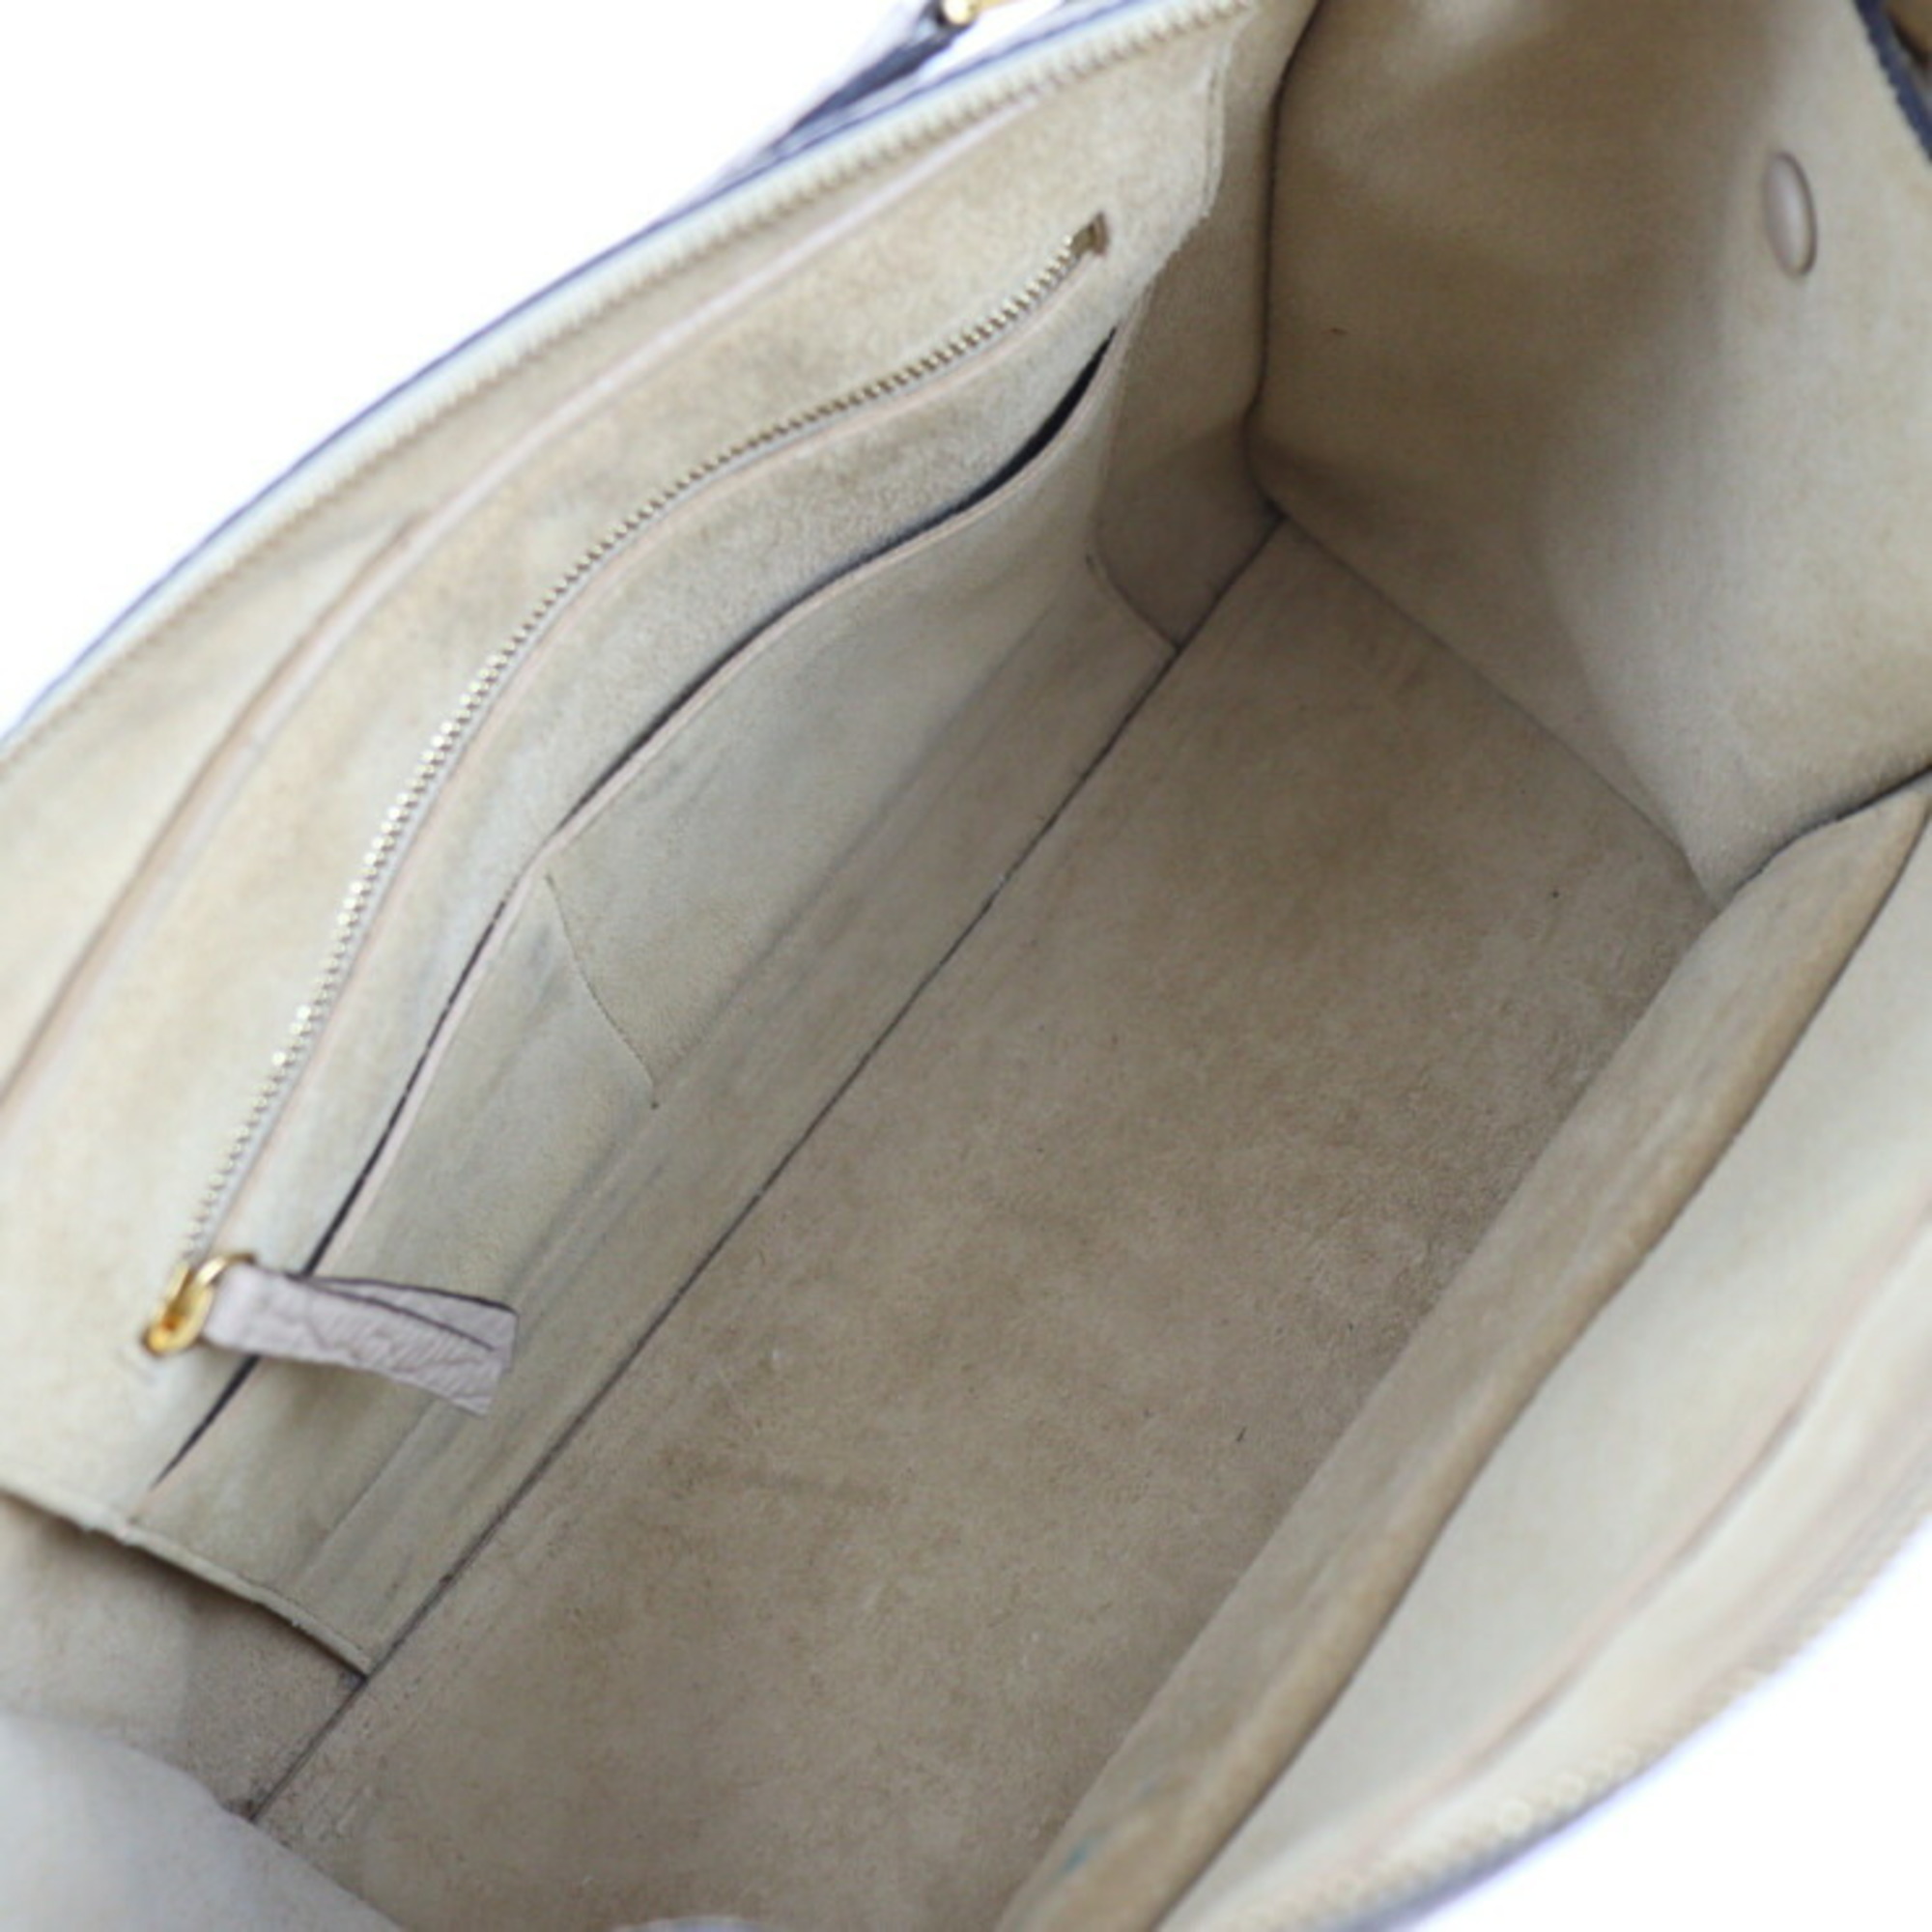 CELINE Celine Small Ring Bag Handbag 176203 Leather Beige Gold Hardware